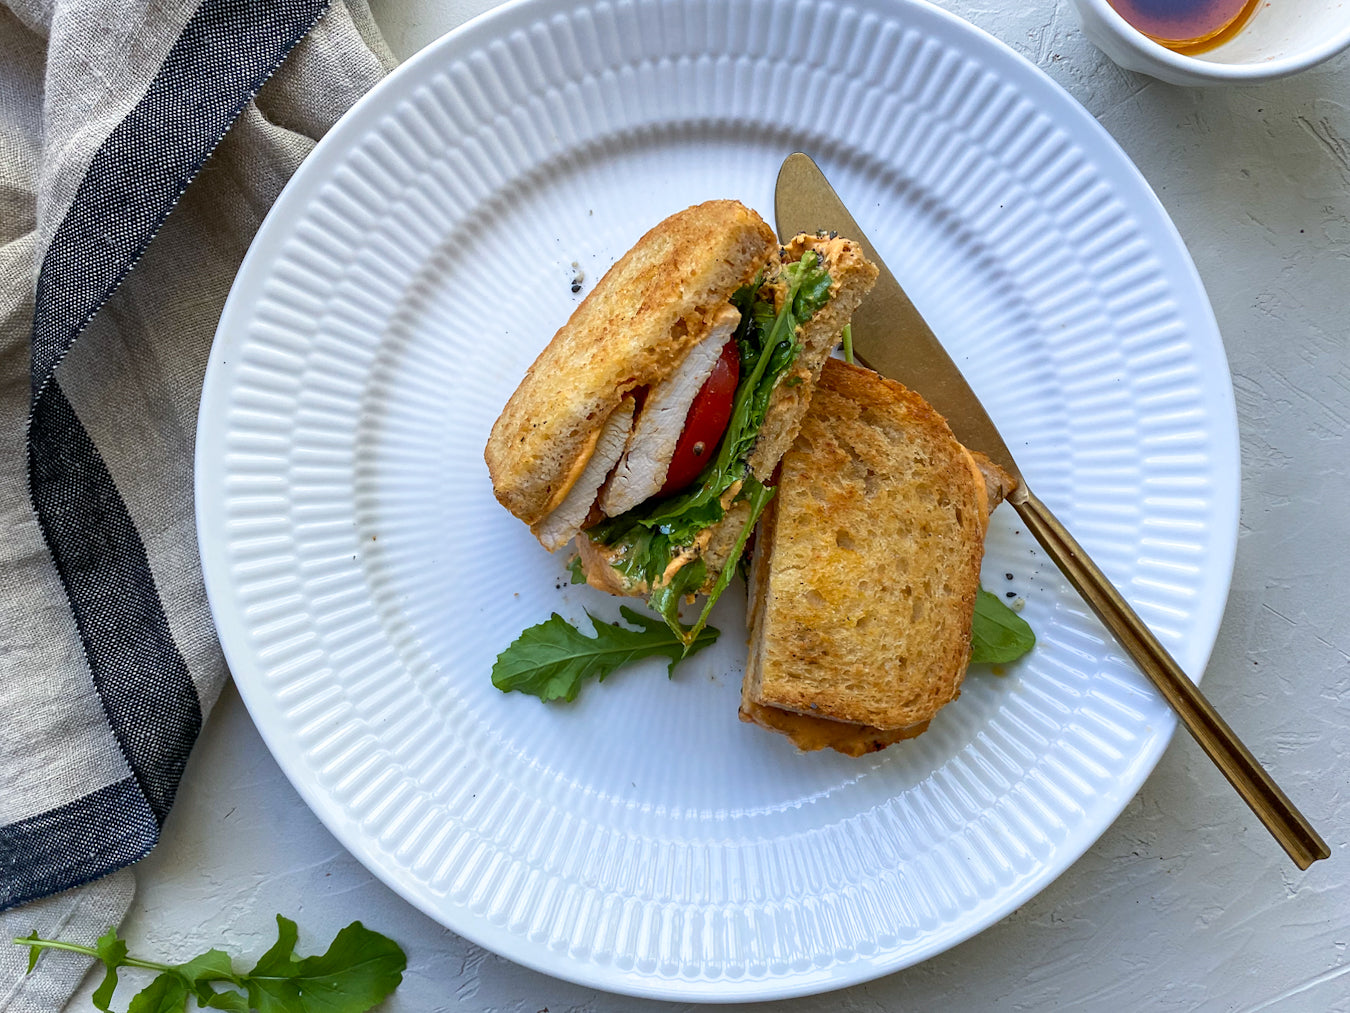 Spicy Turkey & Hummus Sandwich Recipe